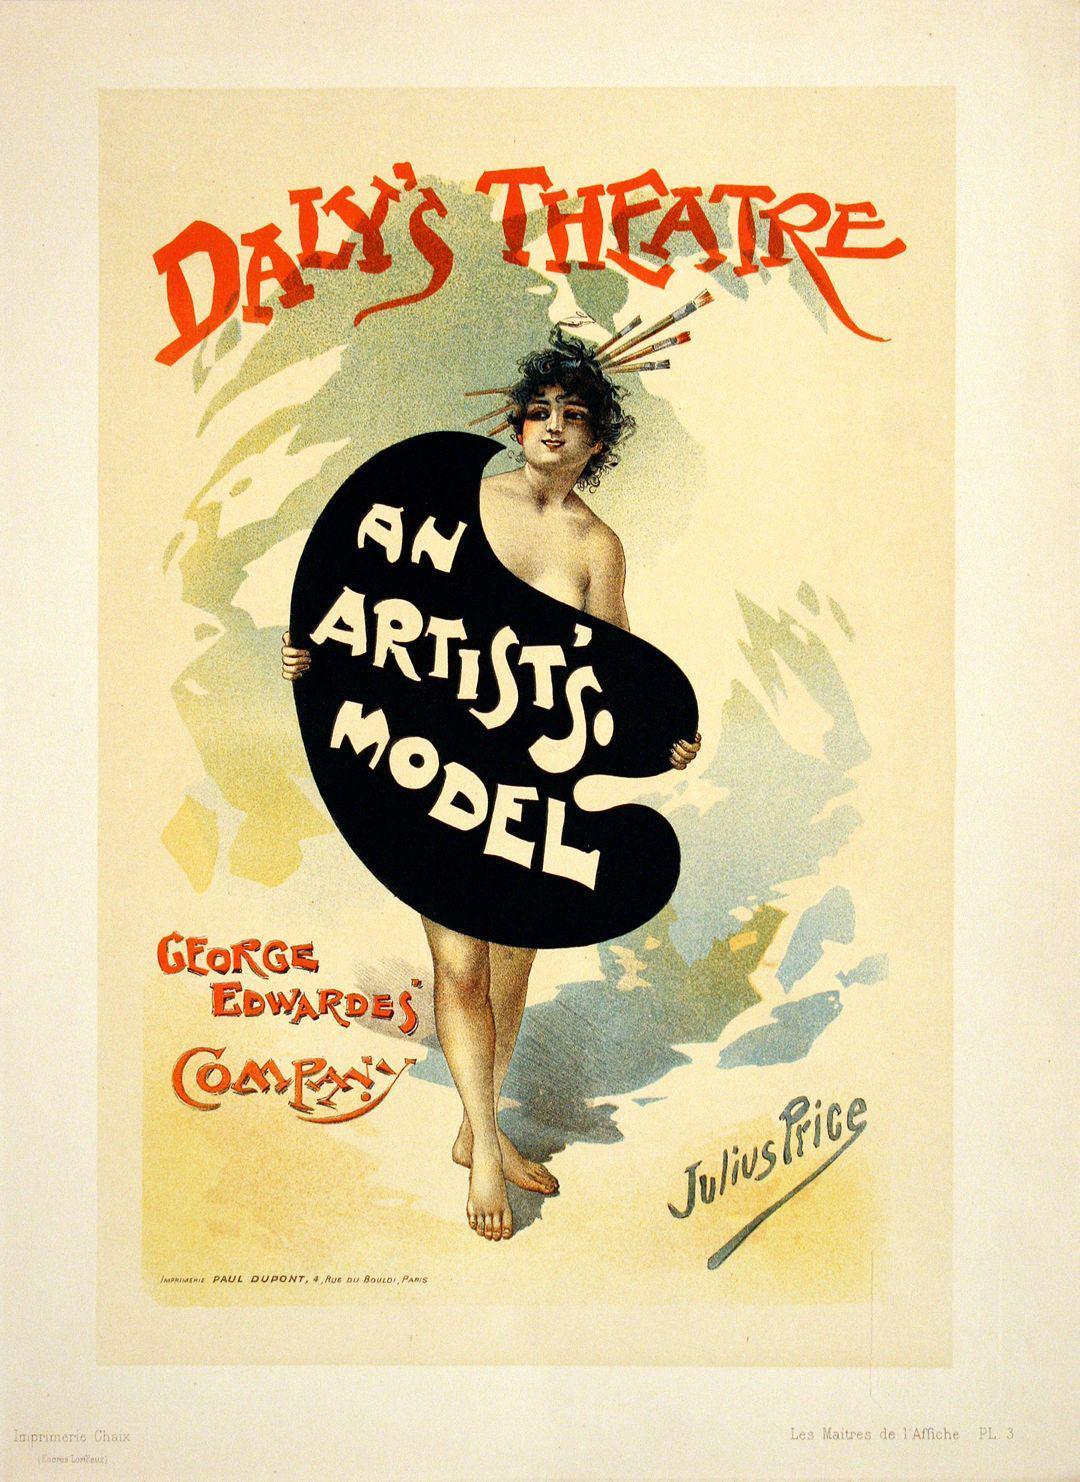 Original Maitres de L'Affiche - PL 3 by Julius Price 1896 - An Artist's Model Daly's Theatre